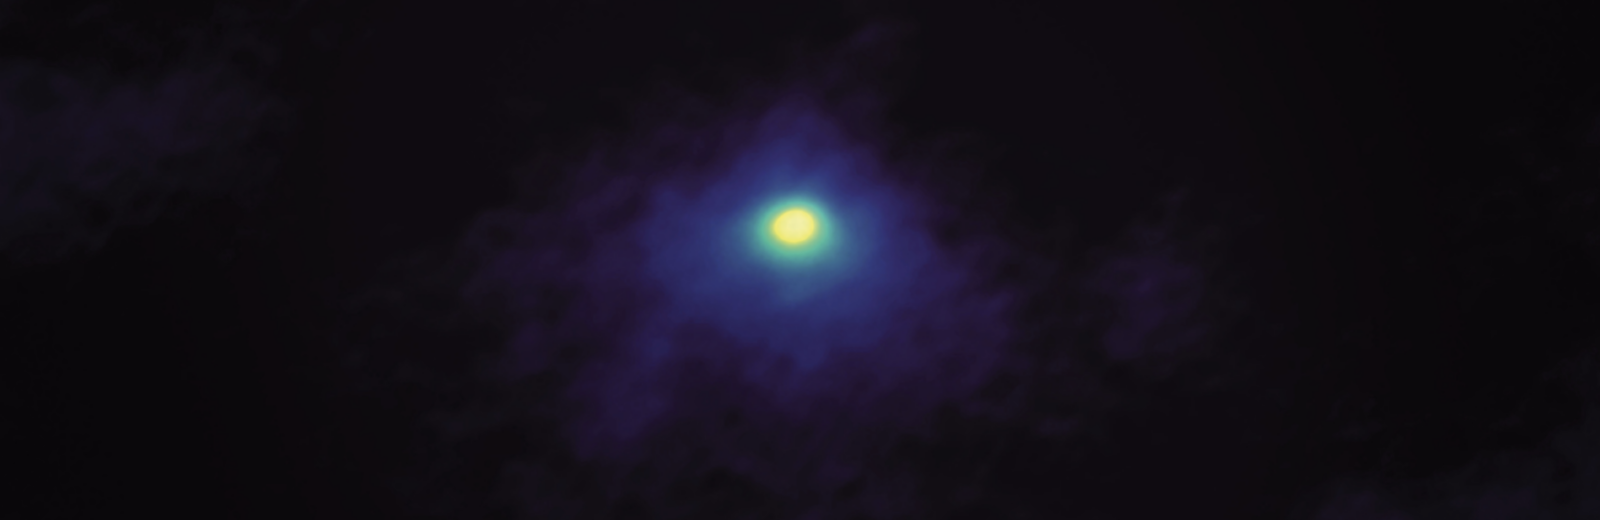 ALMA mapea moléculas orgánicas en la “coma” de cometa Wirtanen